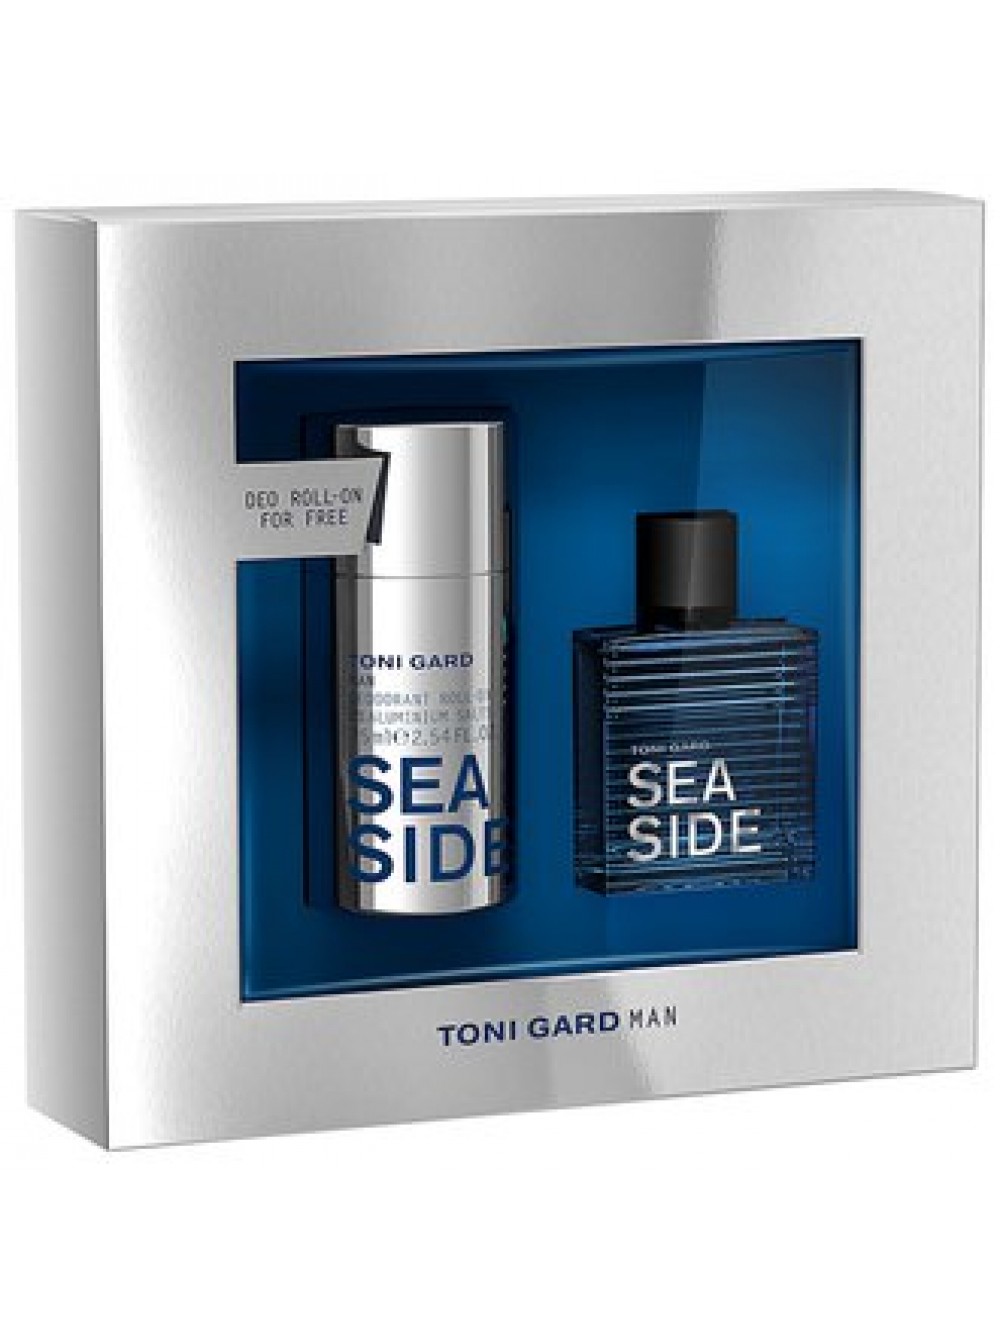 Купить Toni Gard интернет-магазине Intense цене лучшей в набор дезодорант вода мл) 75 30 + по мл (туалетная Подарочный Sea роликовый Side парфюмерии